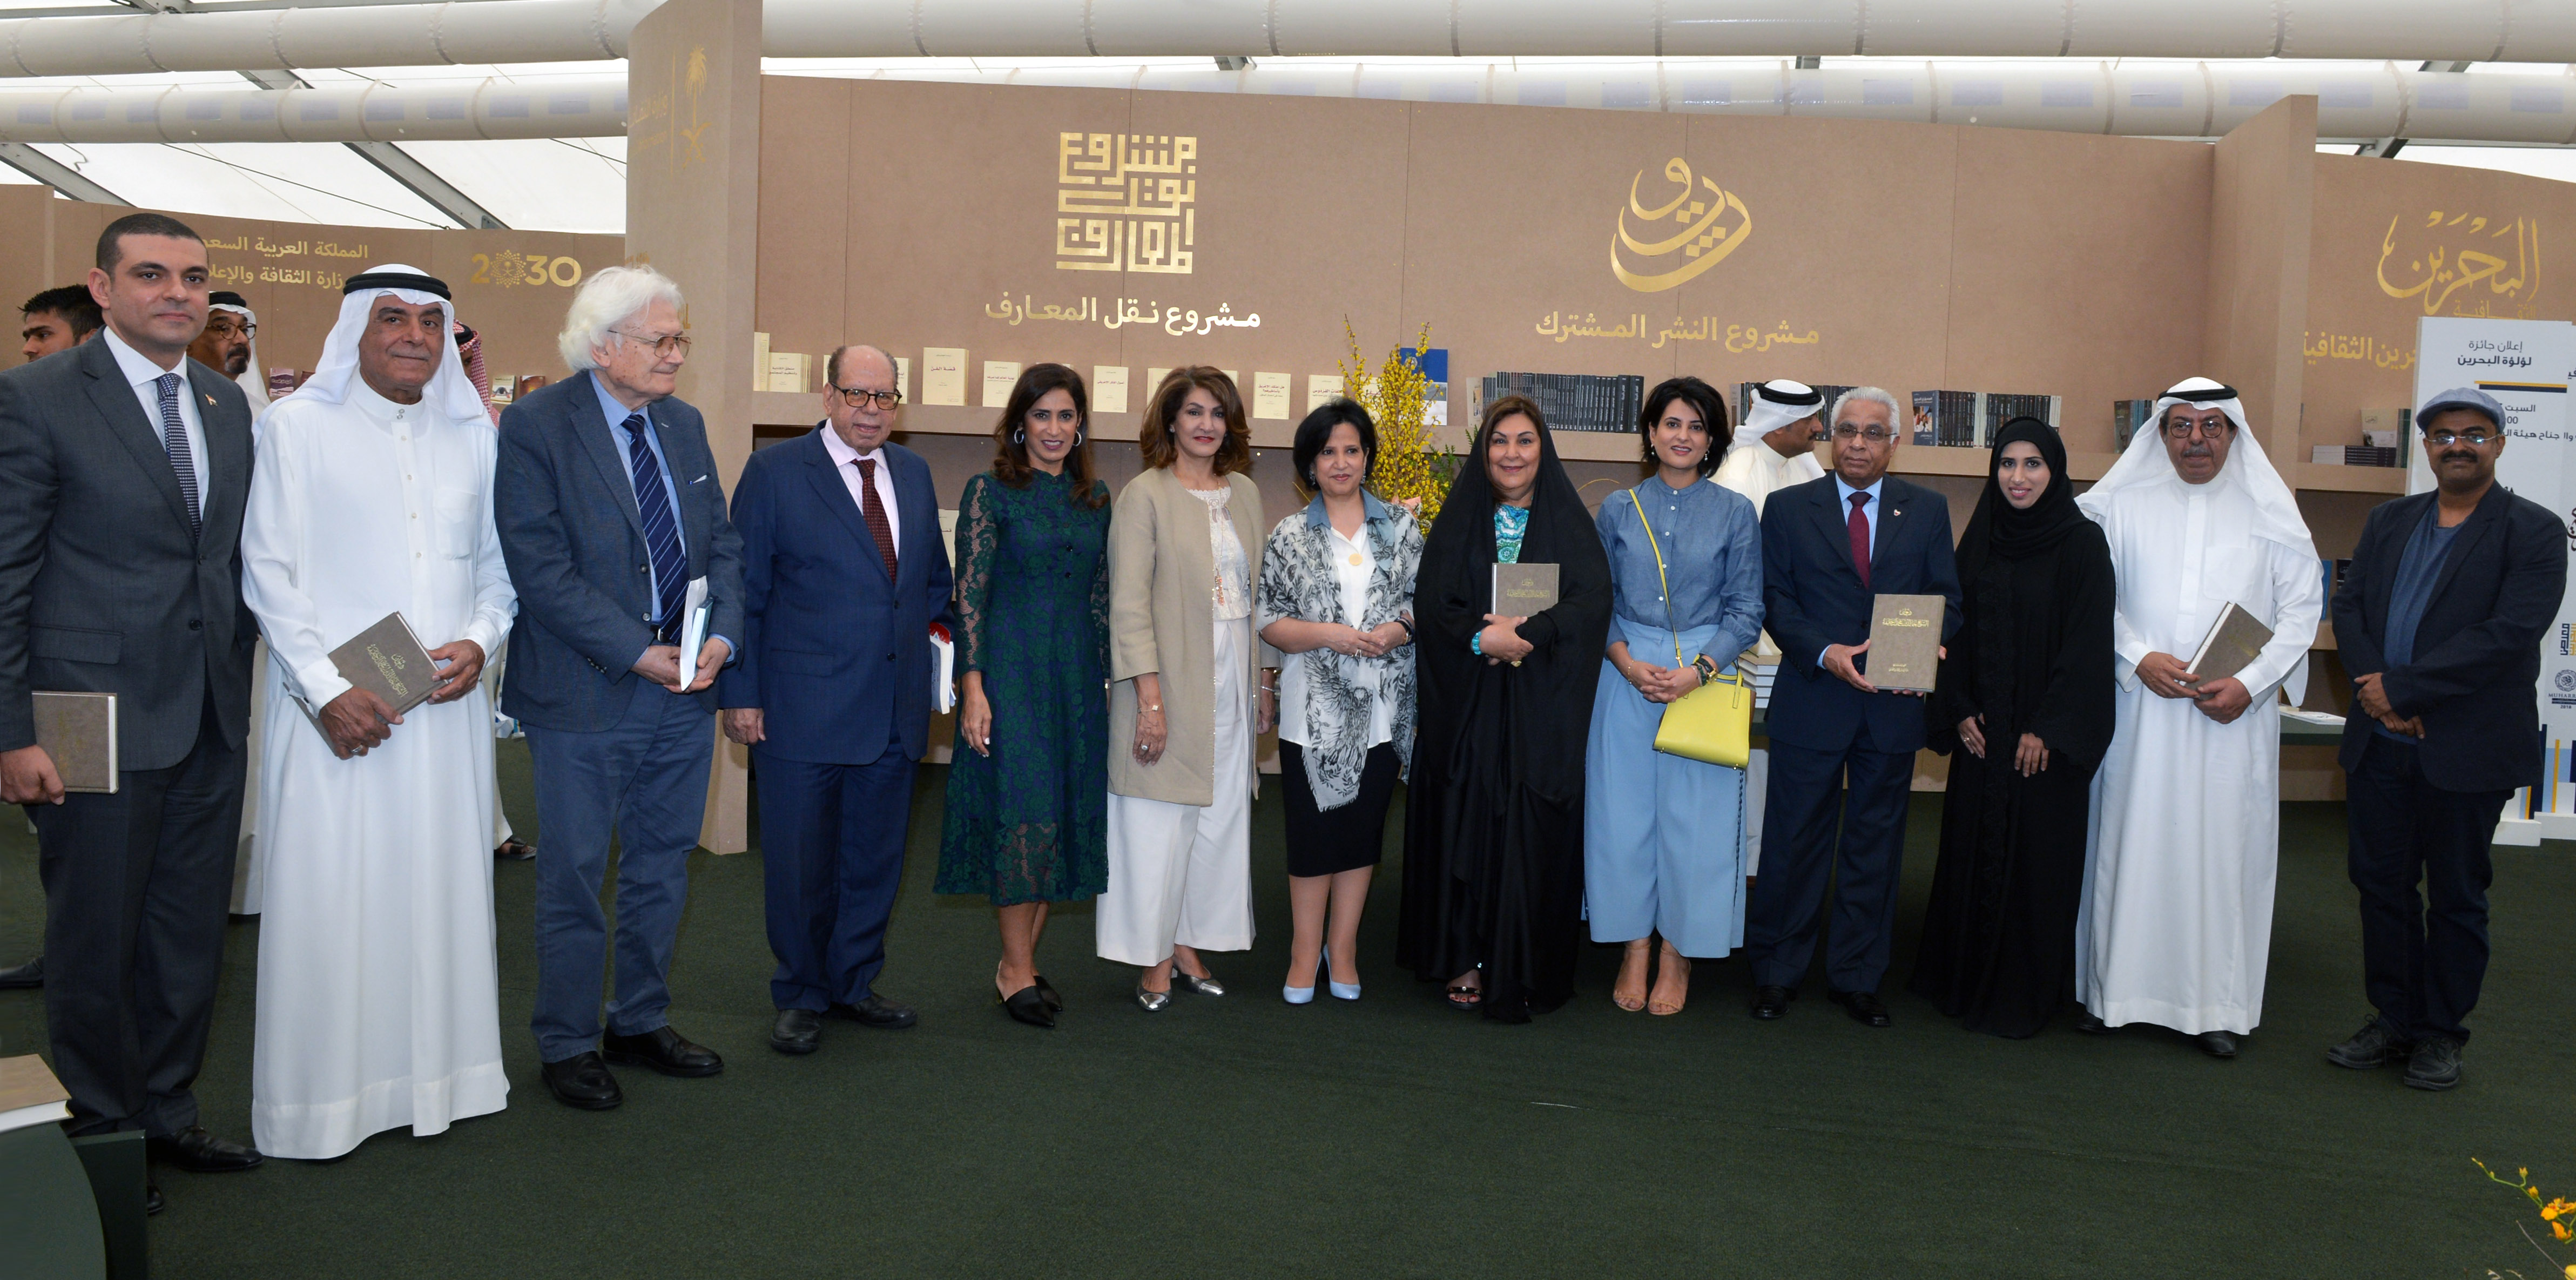 الفائزون بجوائز معرض البحرين الدولى للكتاب 2018